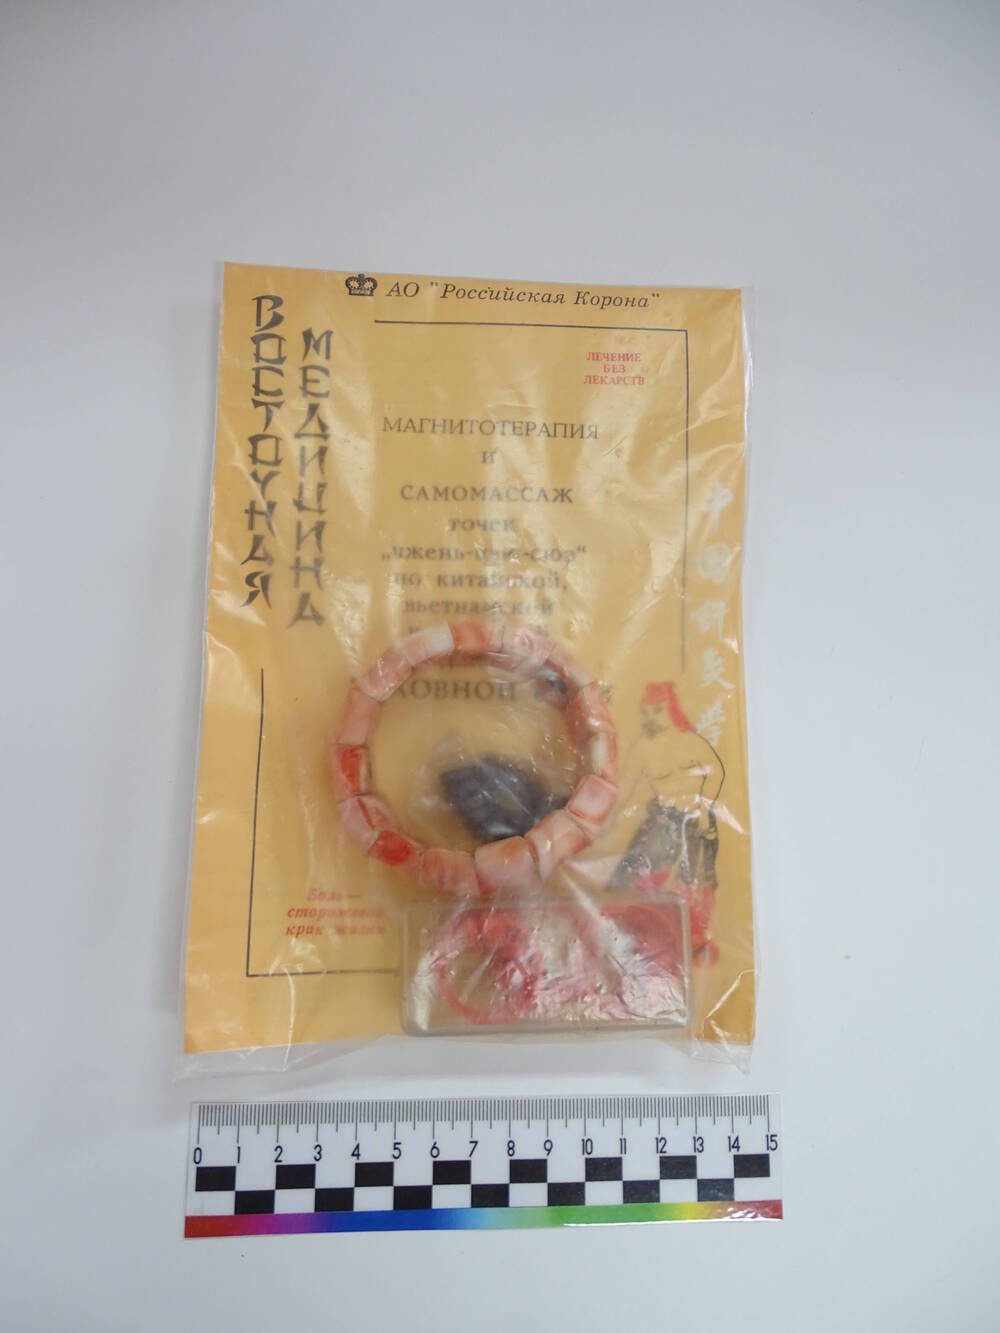 Комплект магнитотронов для лечения головной боли из пластмассы. СССР, АО «Роско», г. Сочи. 1990 год.